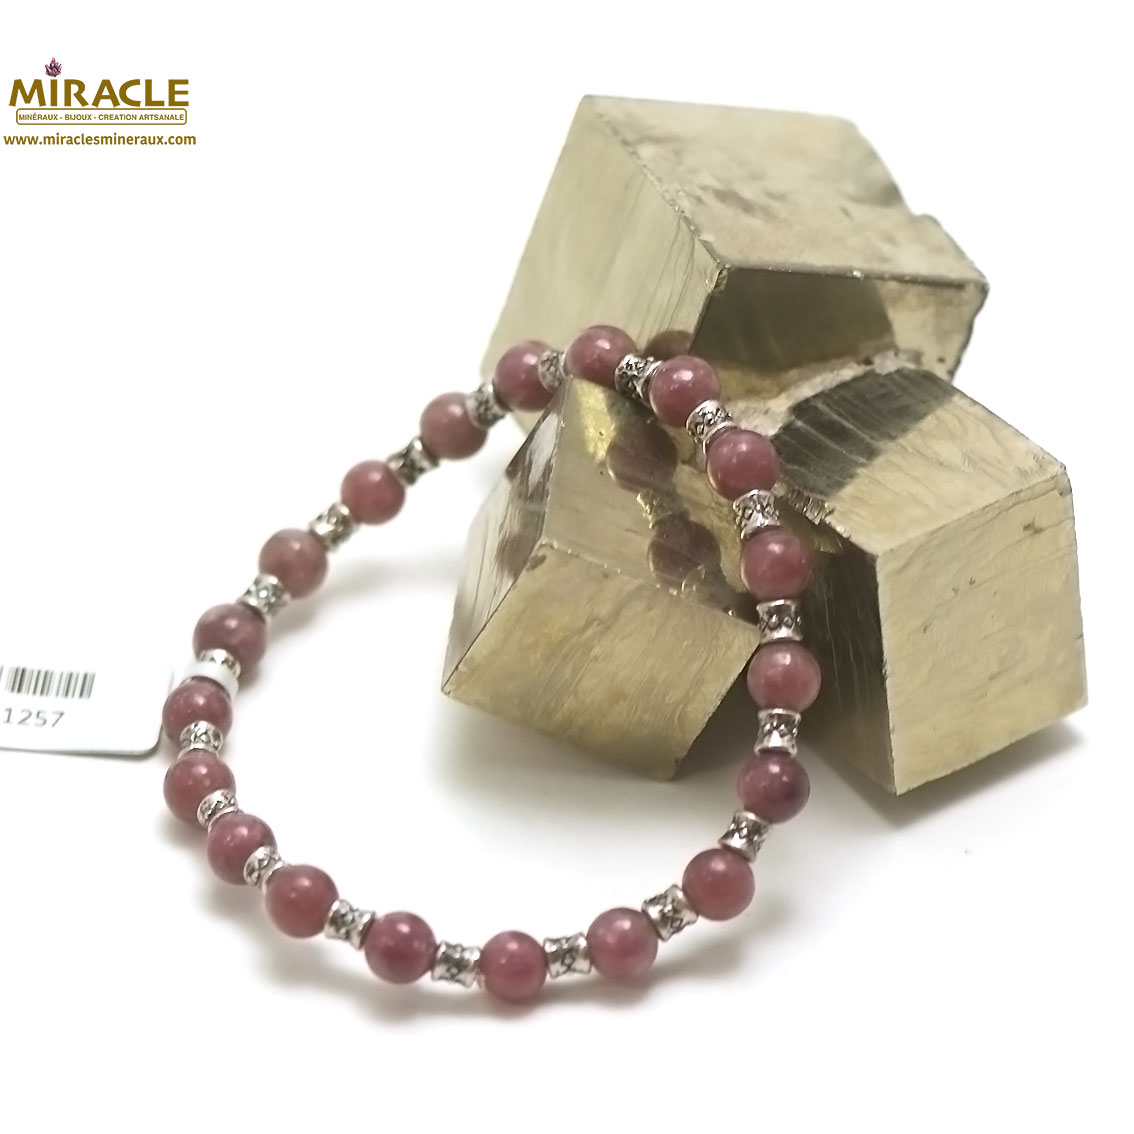 A ronde 6 mm-perle argené 1 bracelet en pierre naturelle de lépidolite